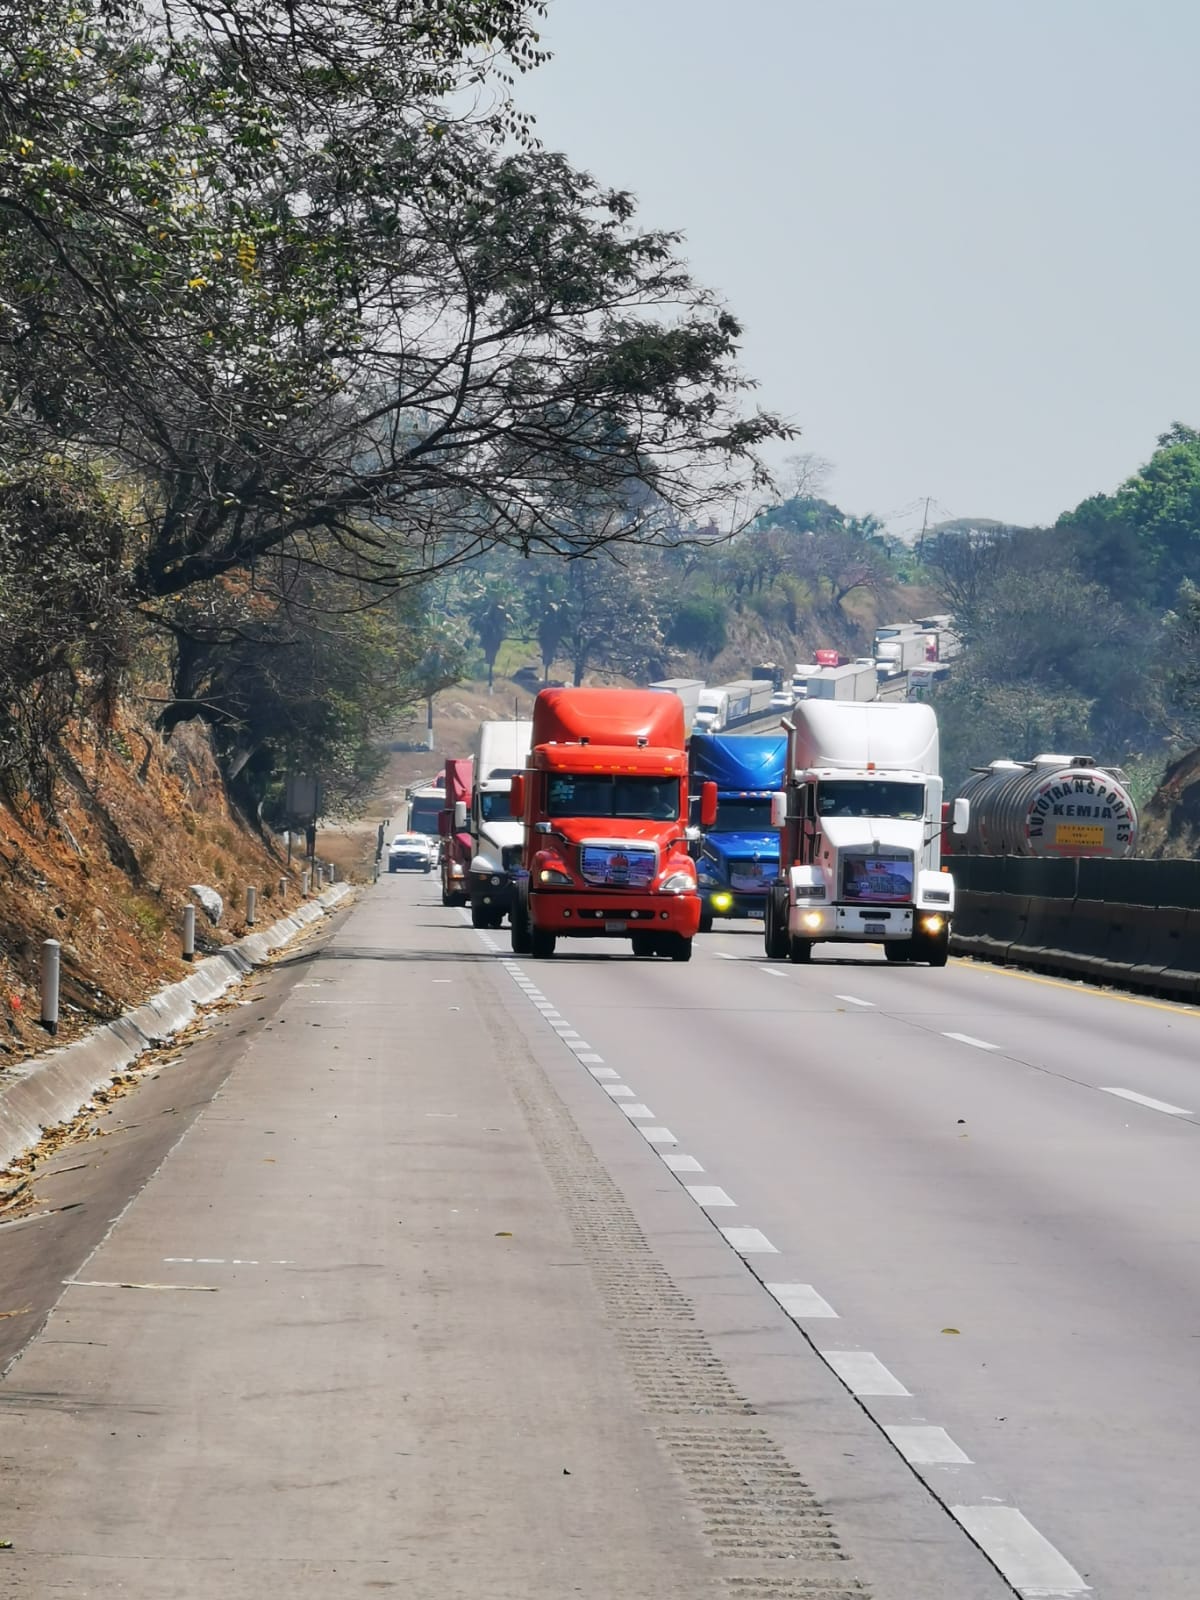 Robo de transporte de carga aumentó 46% en los últimos 2 años en México: Amis